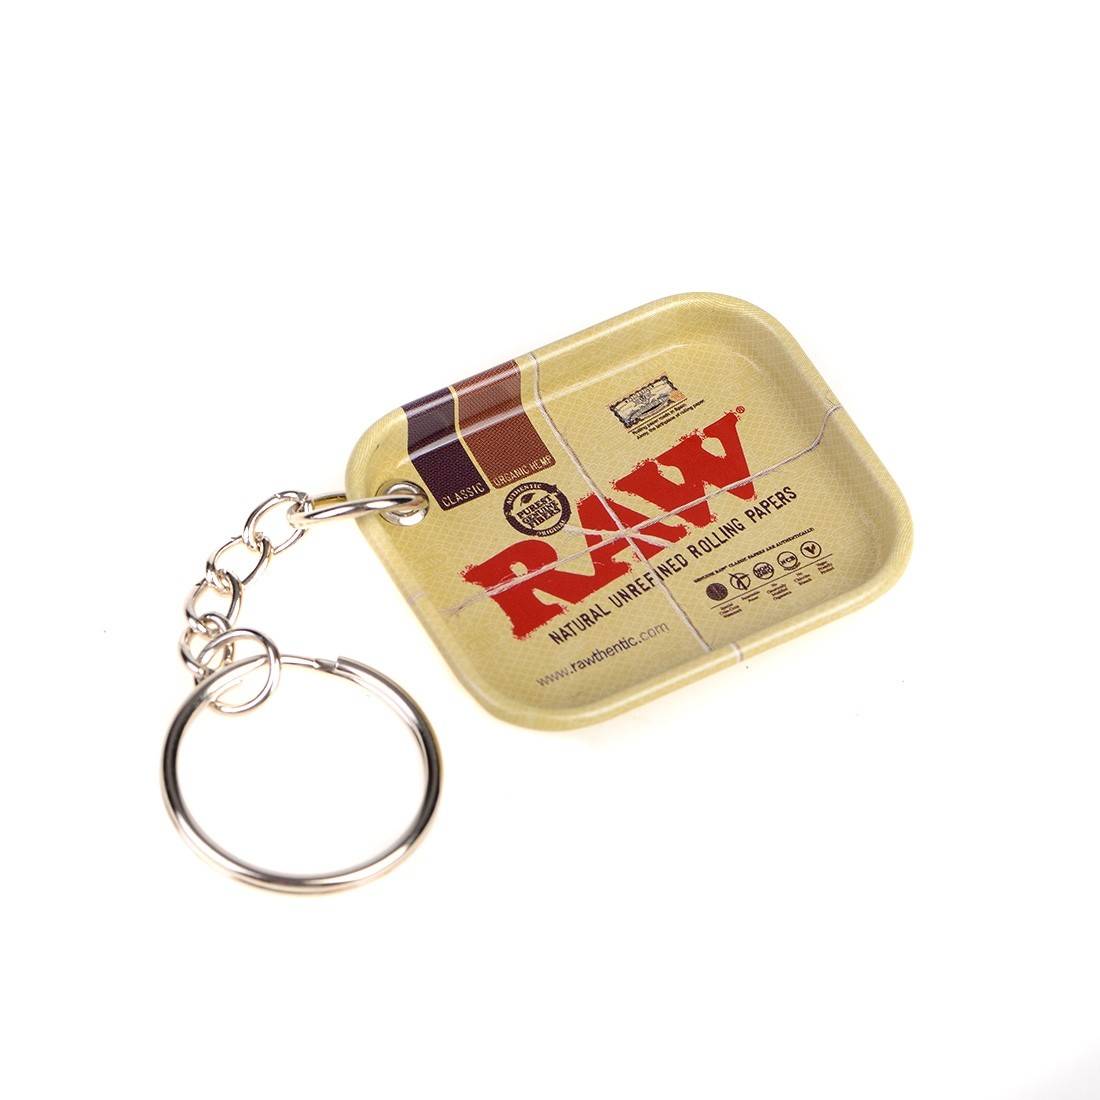 Porte-clés RAW mini plateau - Disponible chez S Factory !